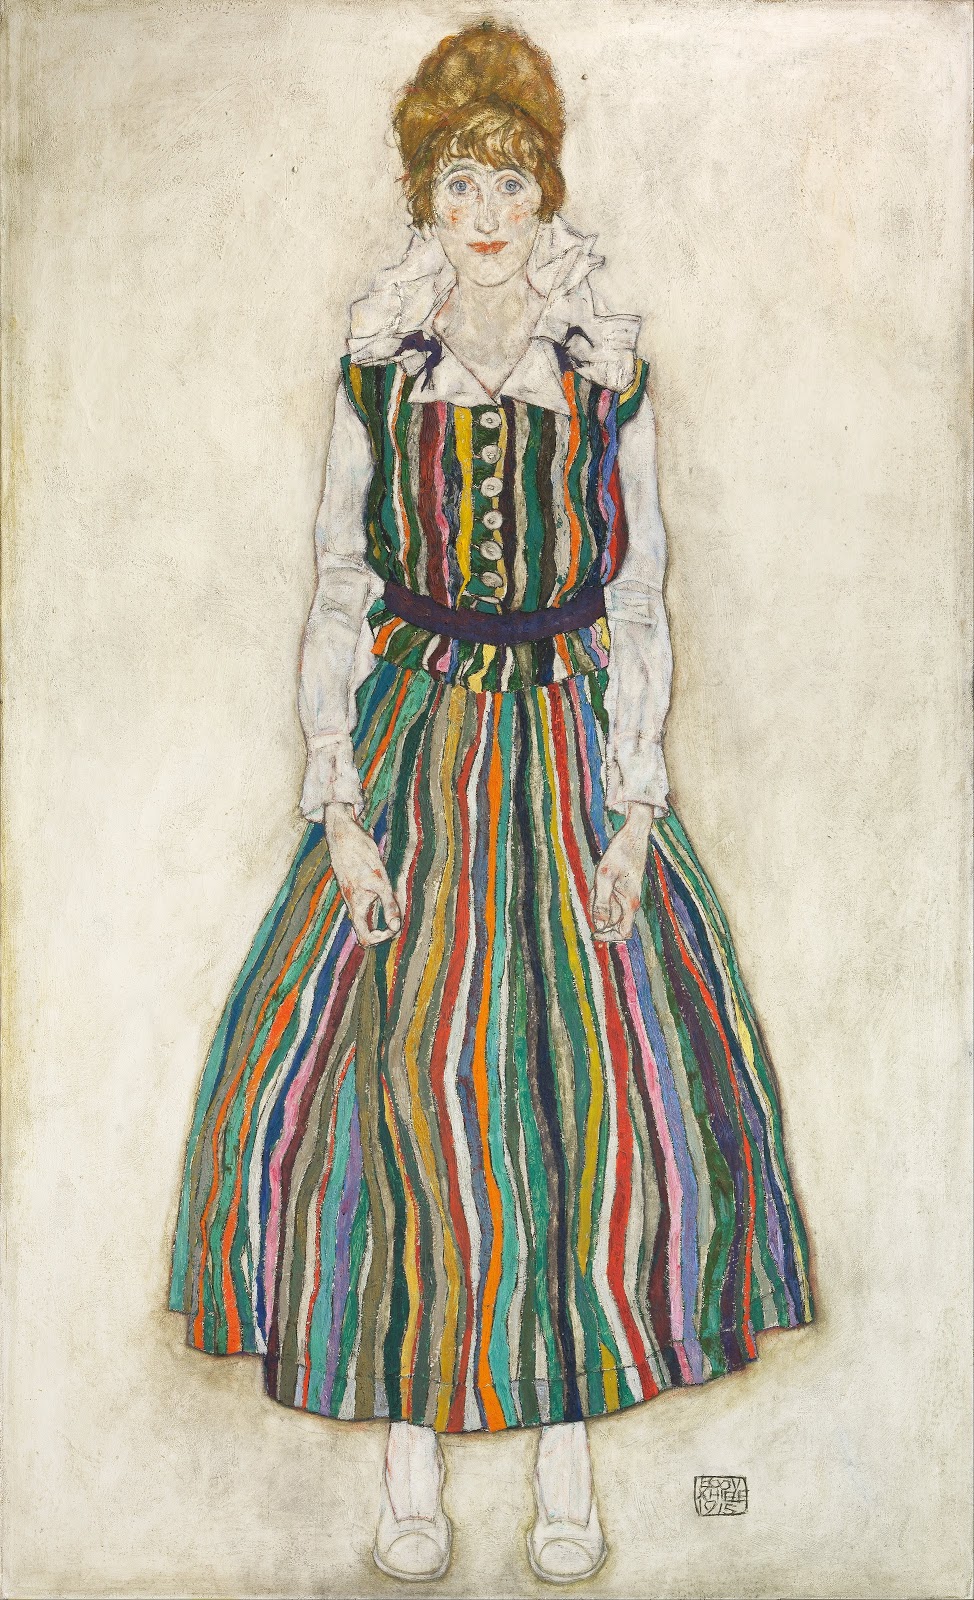 Egon+Schiele-1890-1918 (63).jpg